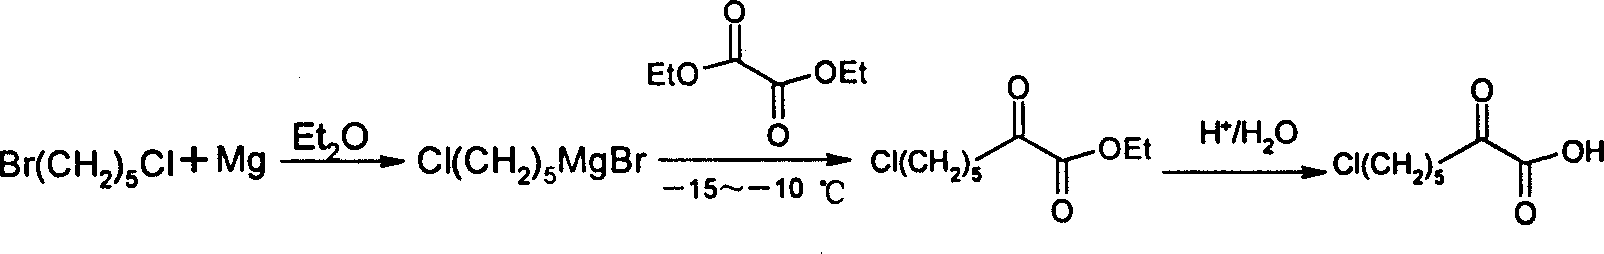 Process for synthesizing 7-chloro-2-oxo-heptanoic acid